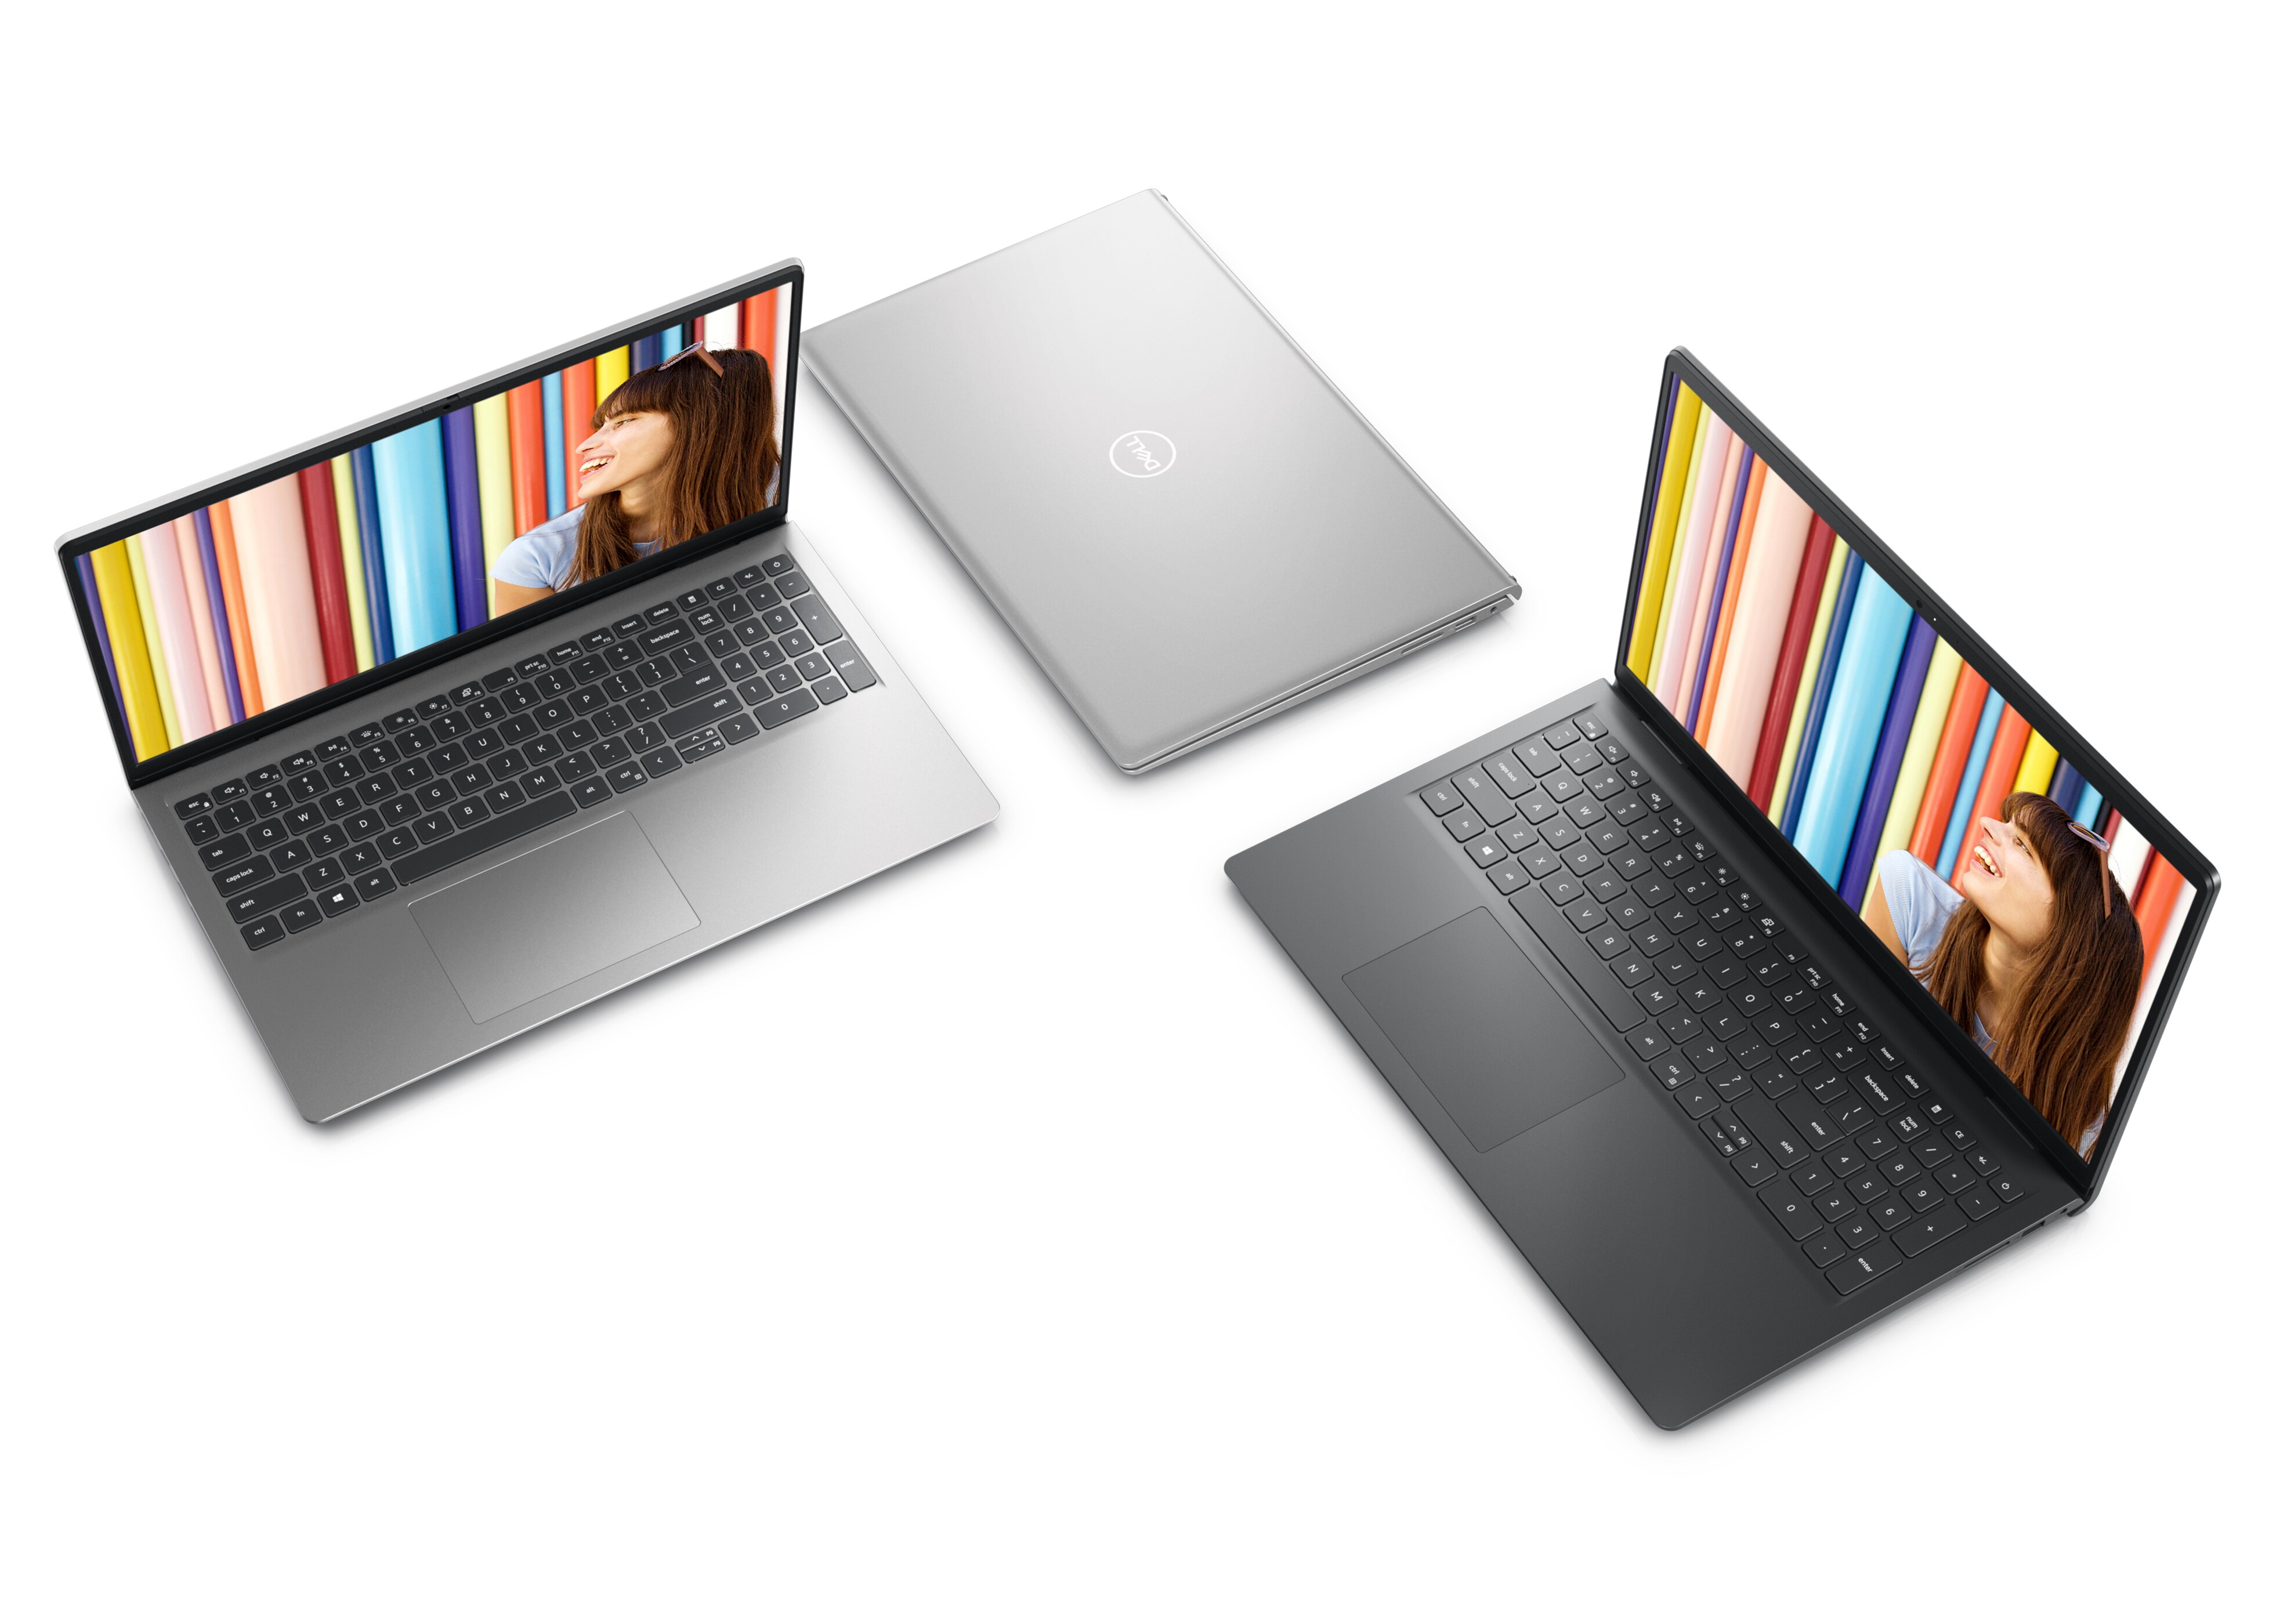 Bild mit drei nebeneinander stehenden Dell Laptops vom Typ Inspiron 15 3525. Zwei der Laptops sind geöffnet, ein Laptop ist geschlossen.